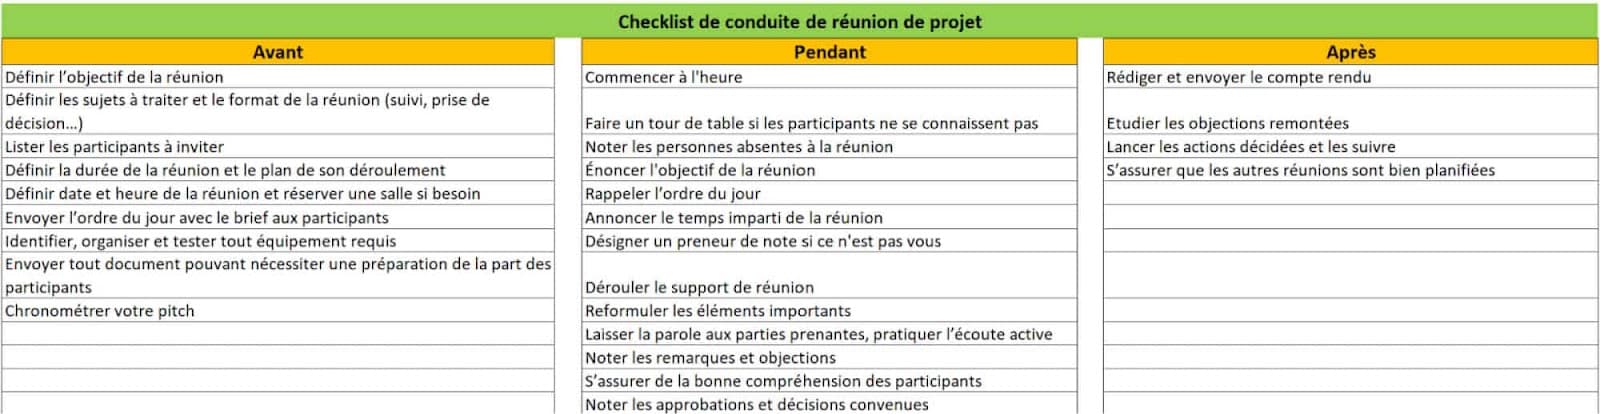 Modèle - Liste de vérification de conduite de réunion de projet